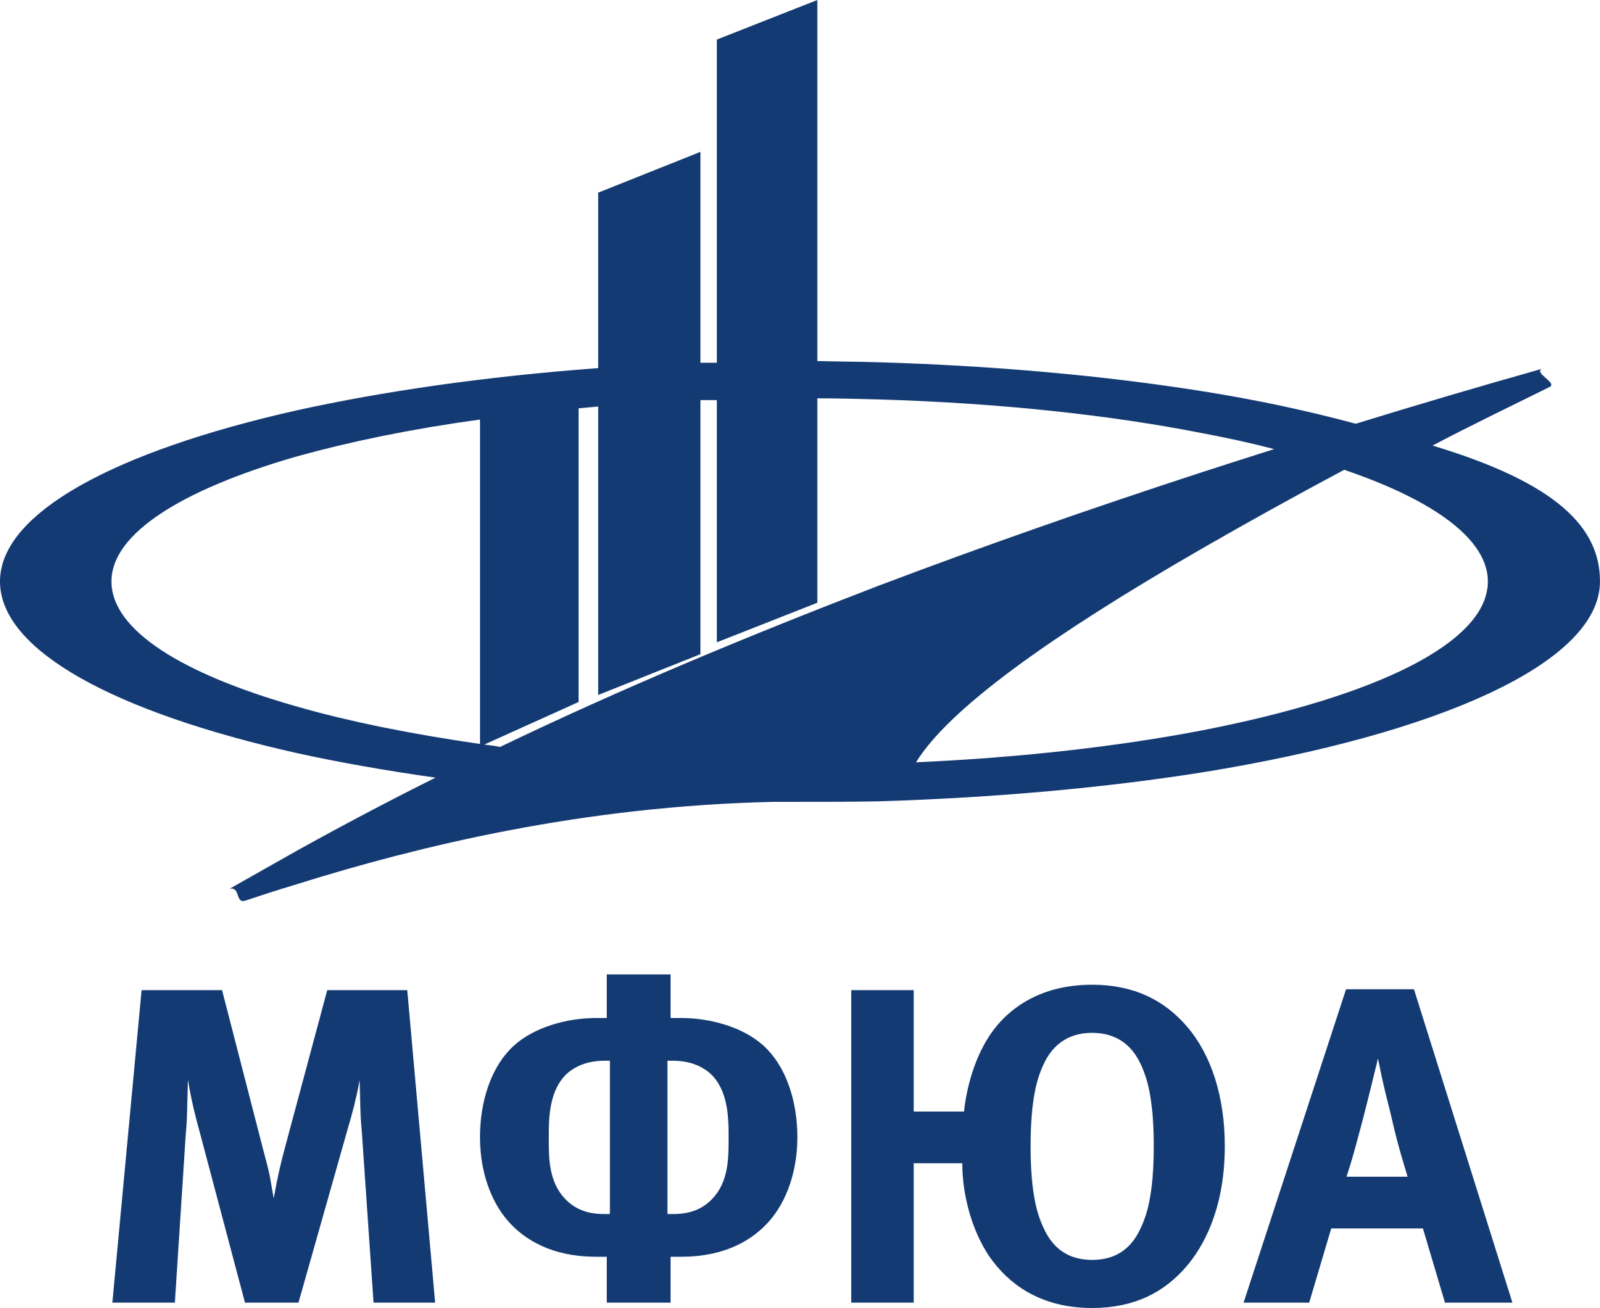 МФЮА - Московский финансово-юридический университет